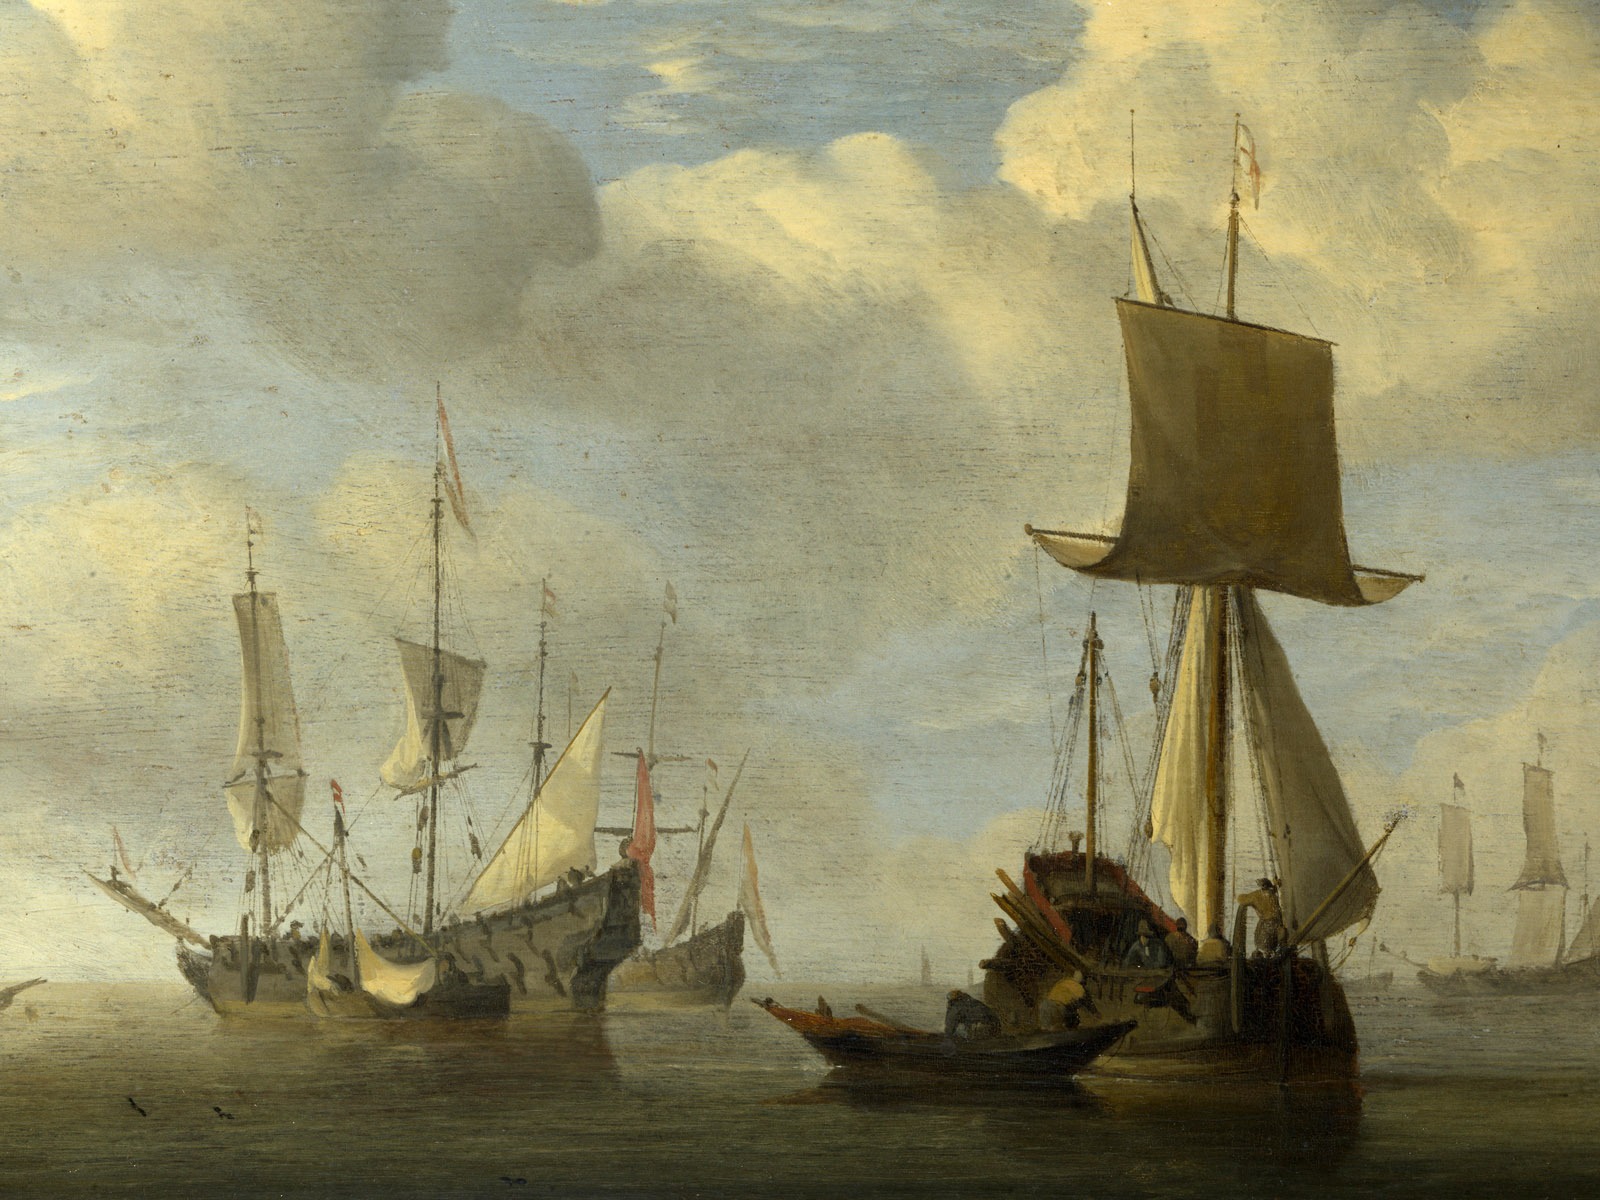 伦敦画廊帆船 壁纸(二)5 - 1600x1200